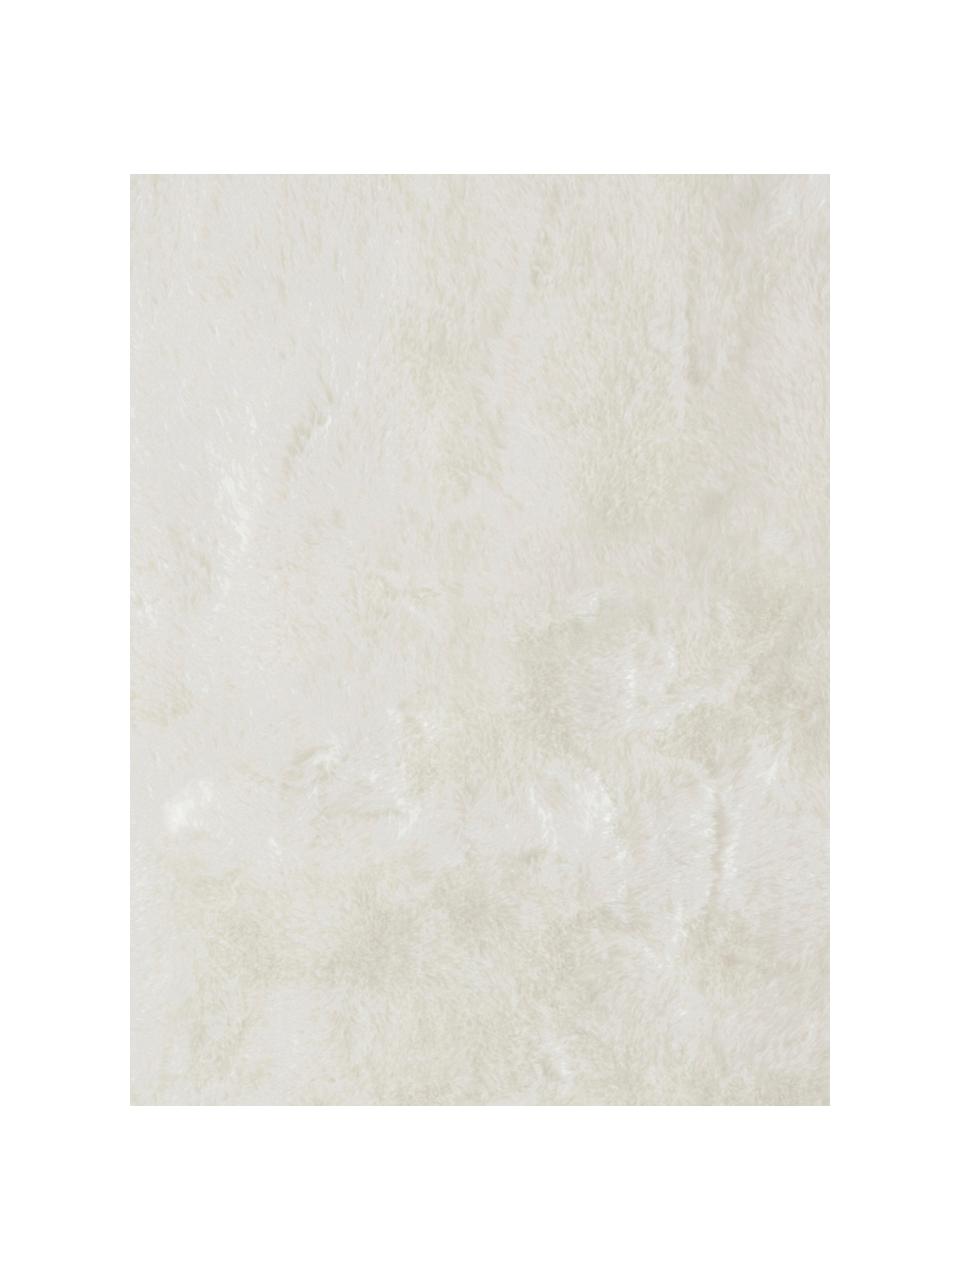 Flauschiger Hochflor-Teppich Superior aus Kunstfell, Flor: 95% Acryl, 5% Polyester, Weiss, B 180 x L 280 cm (Grösse M)